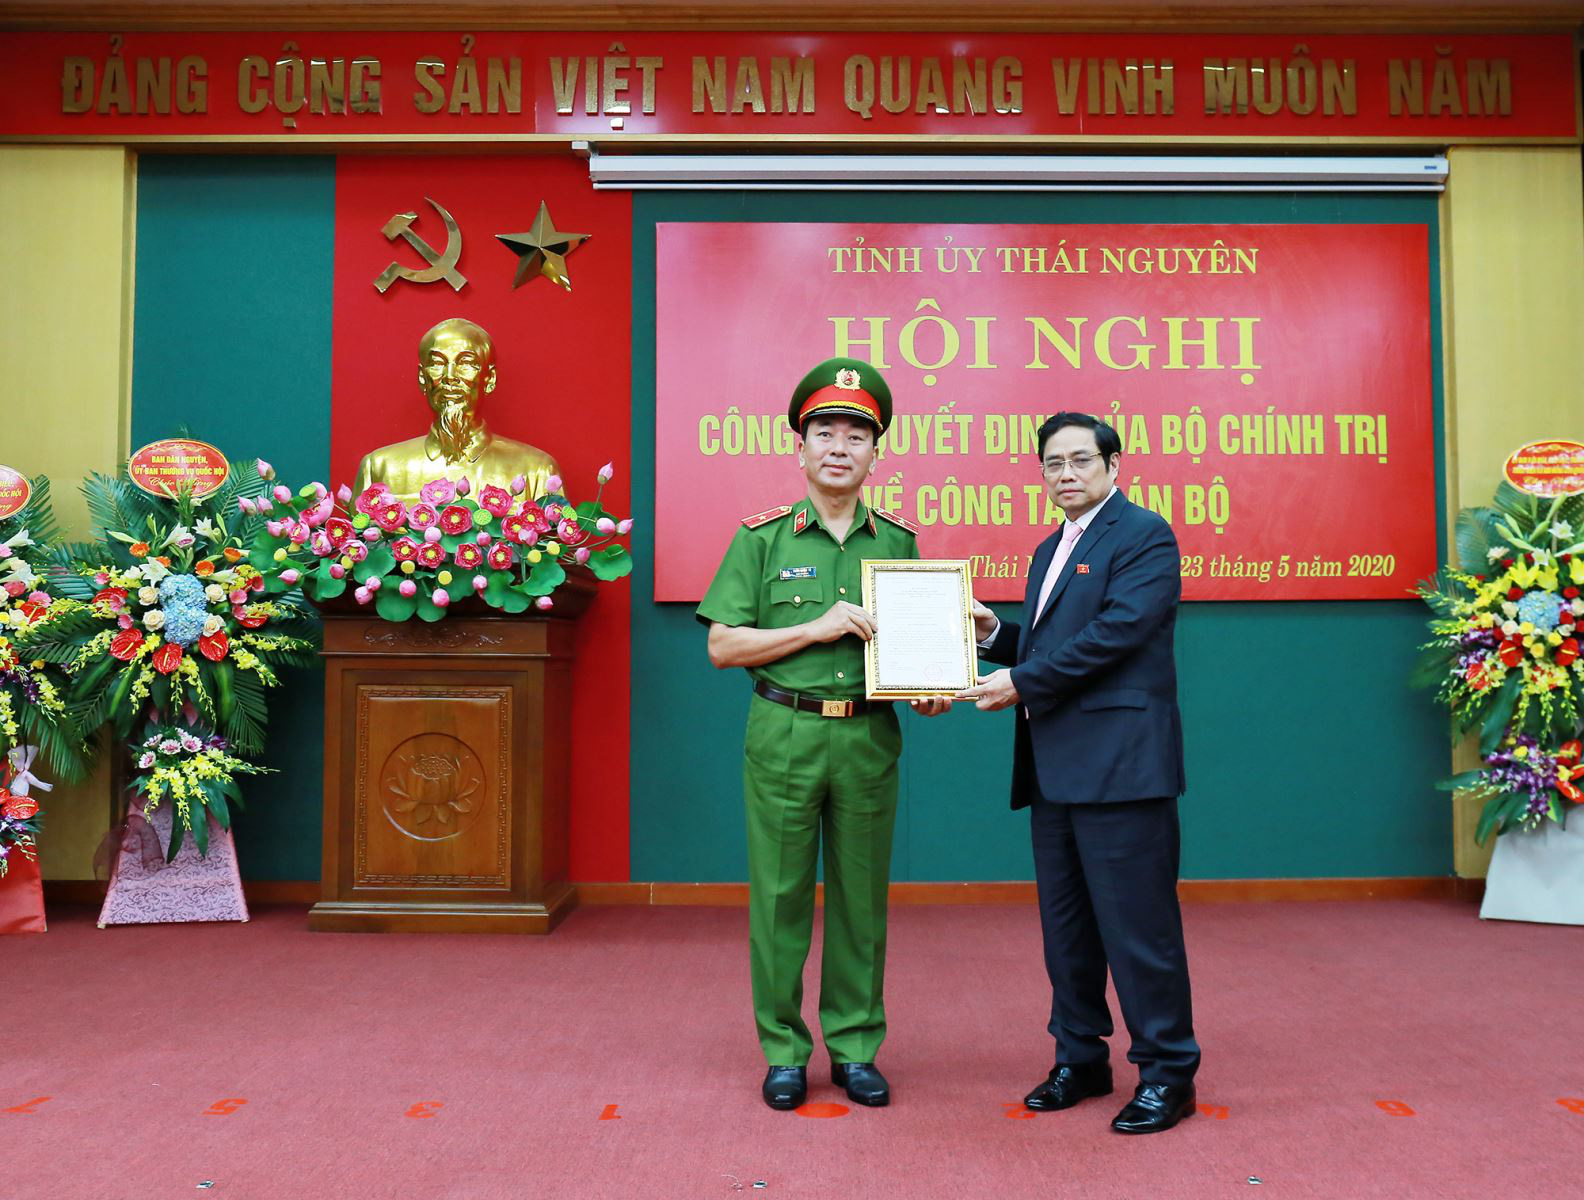 Trao Quyết định điều động bà Nguyễn Thanh Hải làm Bí thư tỉnh ủy Thái Nguyên - Ảnh 1.